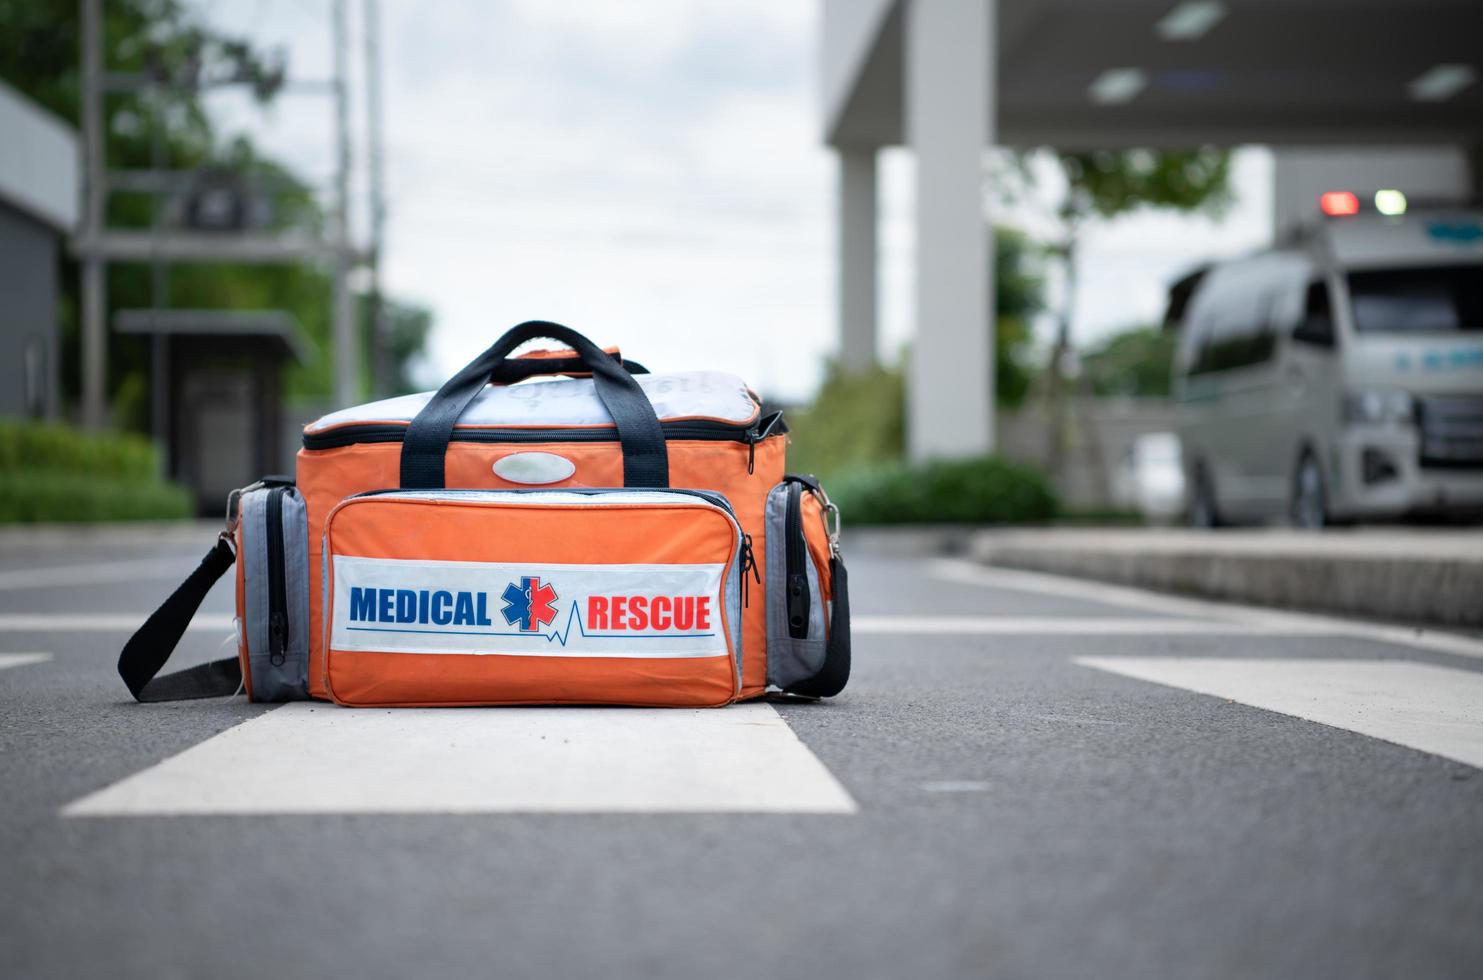 borsa di pronto soccorso, per l'équipe medica che presta il primo soccorso in caso di incidente foto